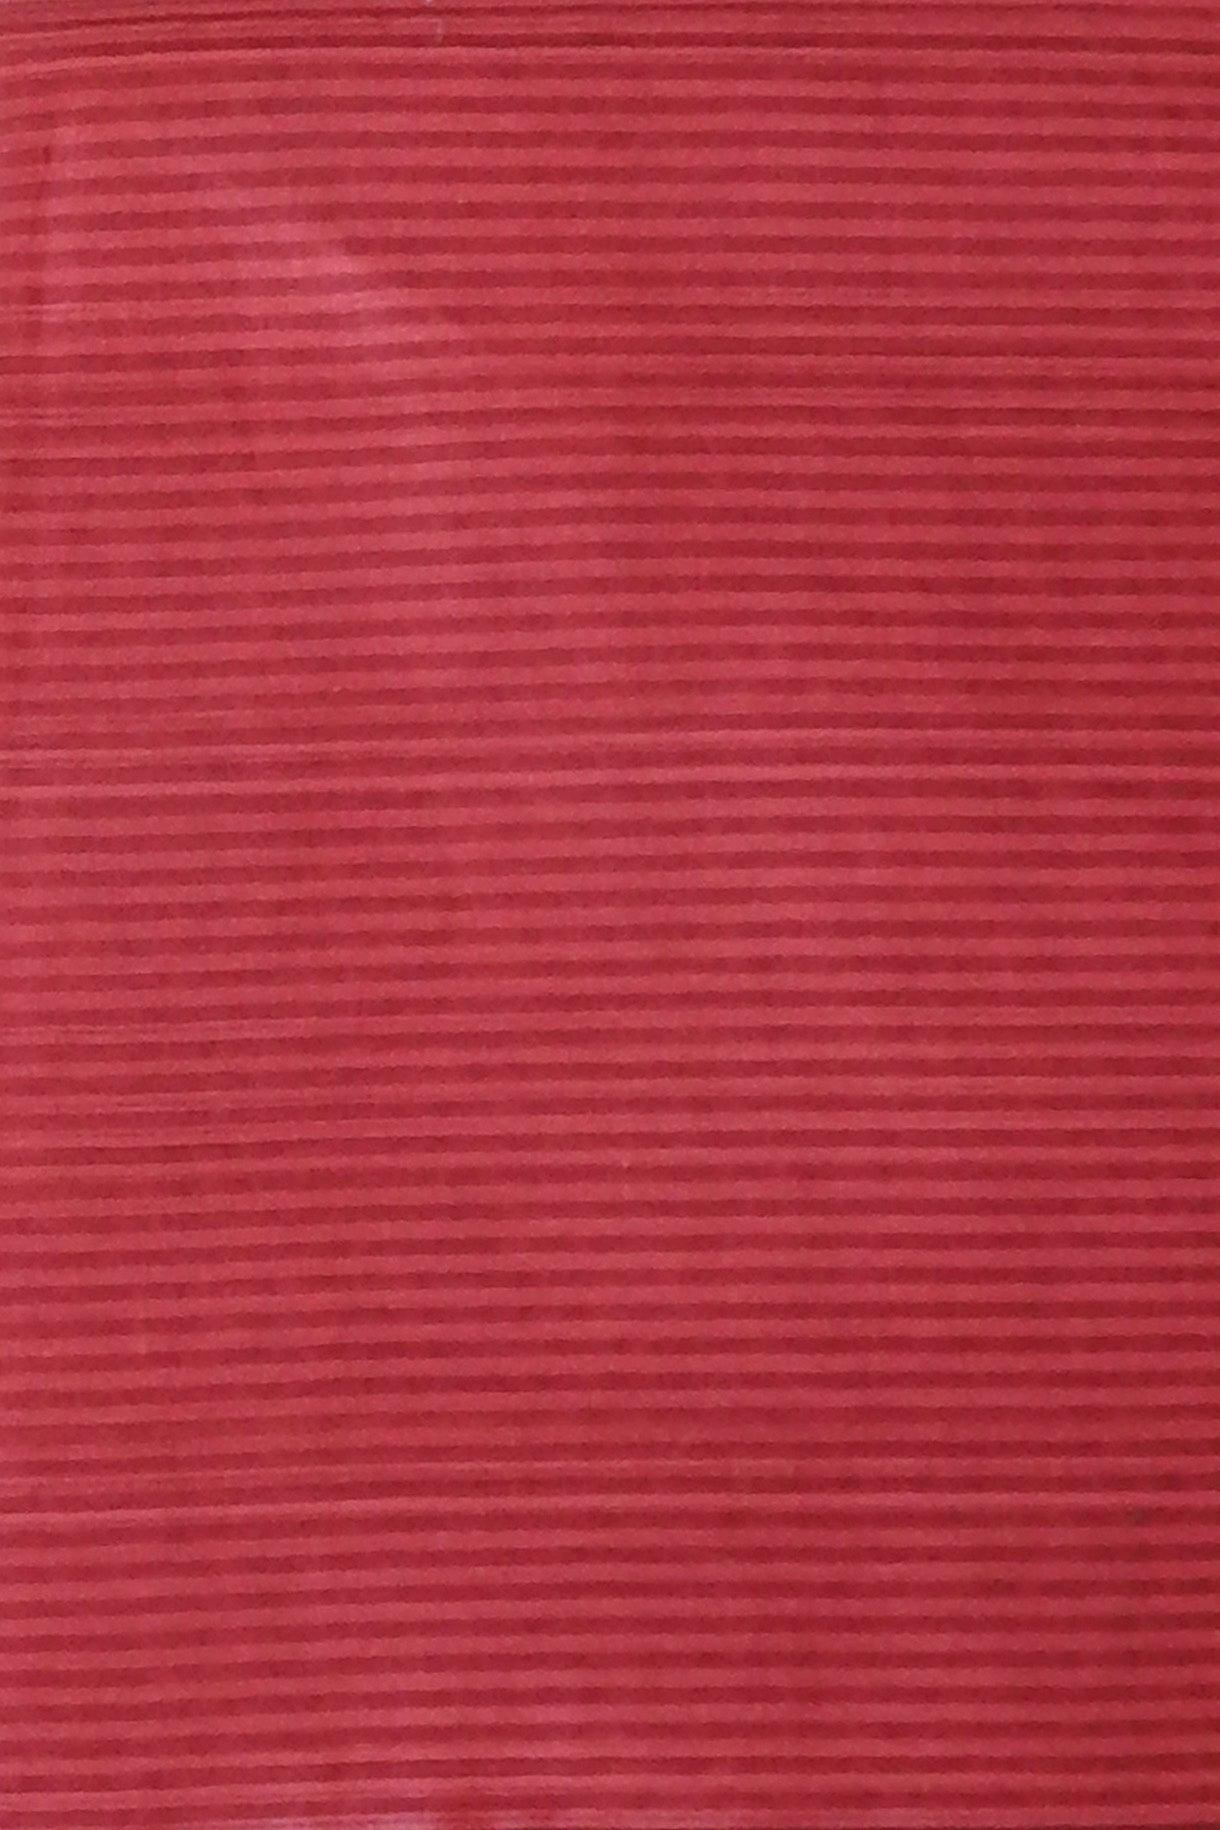 Red Traditional Ethnic Designs Printed Pure Mulmul Cotton Zari Border Saree - Shop Karishma